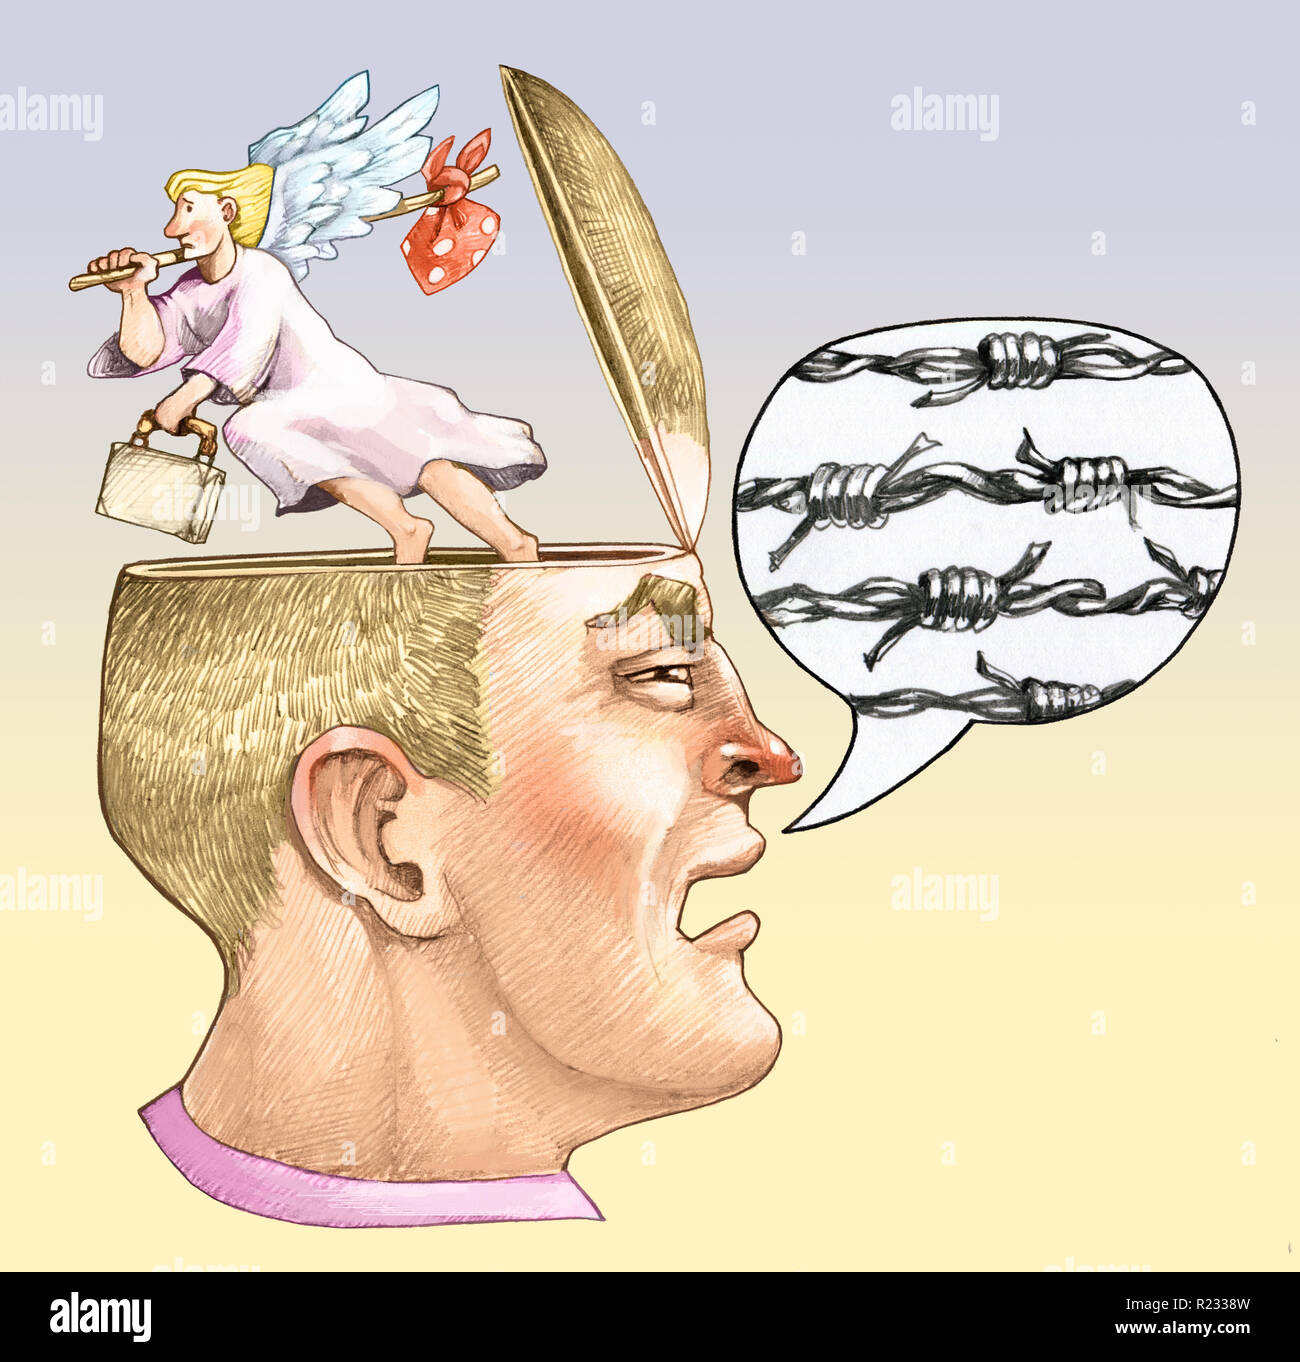 Une tête masculine en bande dessinée avec le profil de la tête de filetage désossée l'ange de la conscience s'échappe de l'allégorie politique Le racisme et la violence Banque D'Images